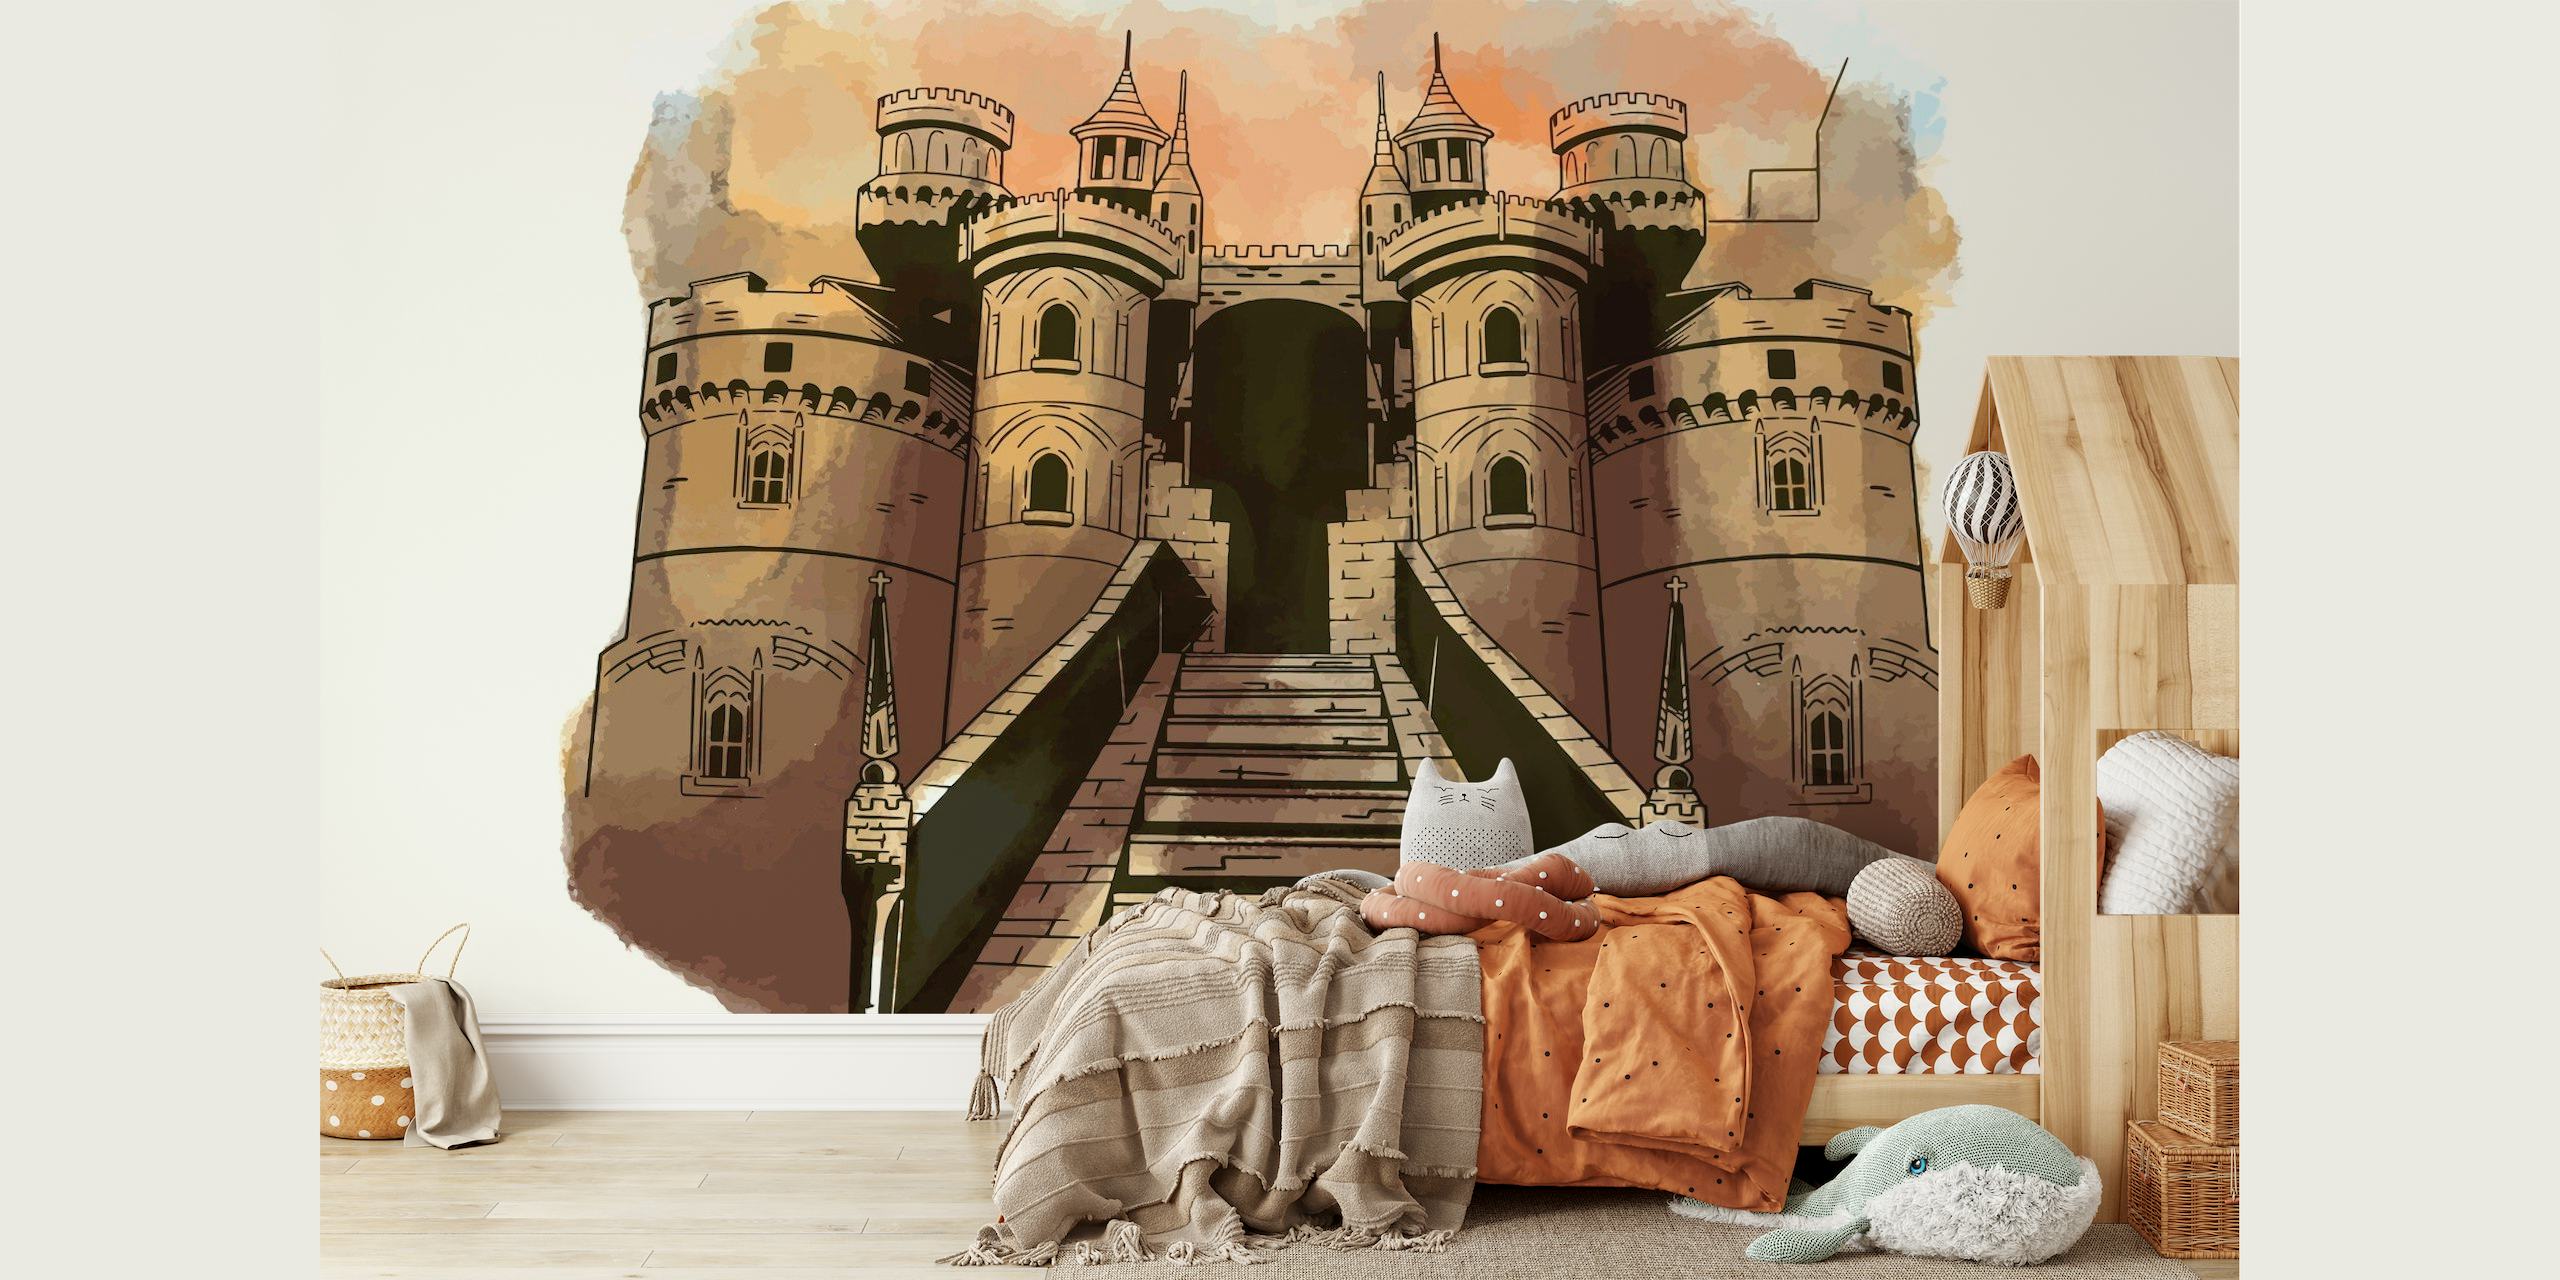 Princess Castle Palace papel pintado